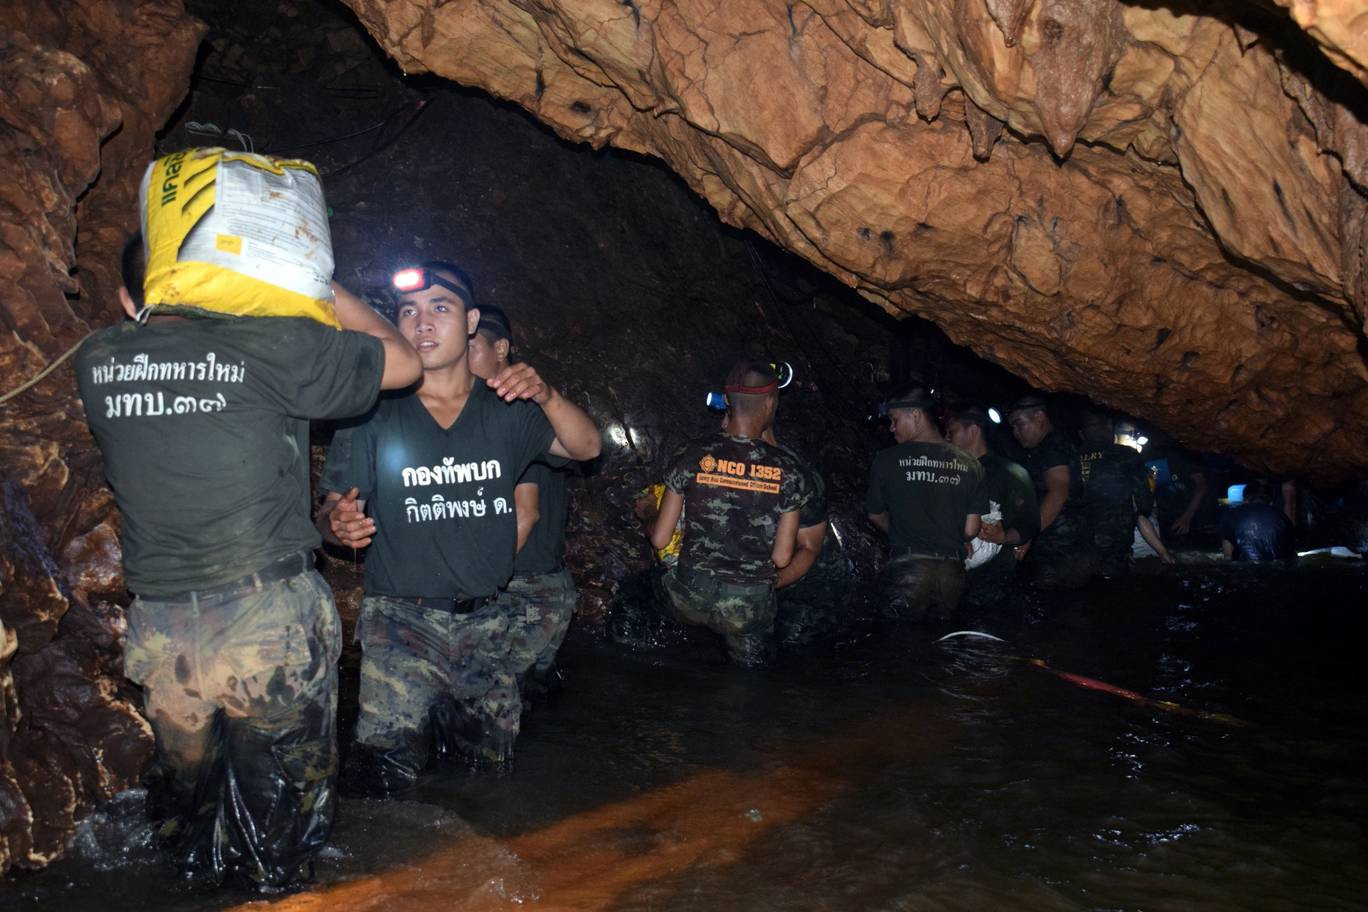 Quân đội Thái Lan mang những thiết bị cứu trợ, nhu yếu phẩm cần thiết vào trong hang. Trong thời gian cứu trợ, mưa to liên tục diễn ra gây khó khăn cho các cơ quan chức năng.